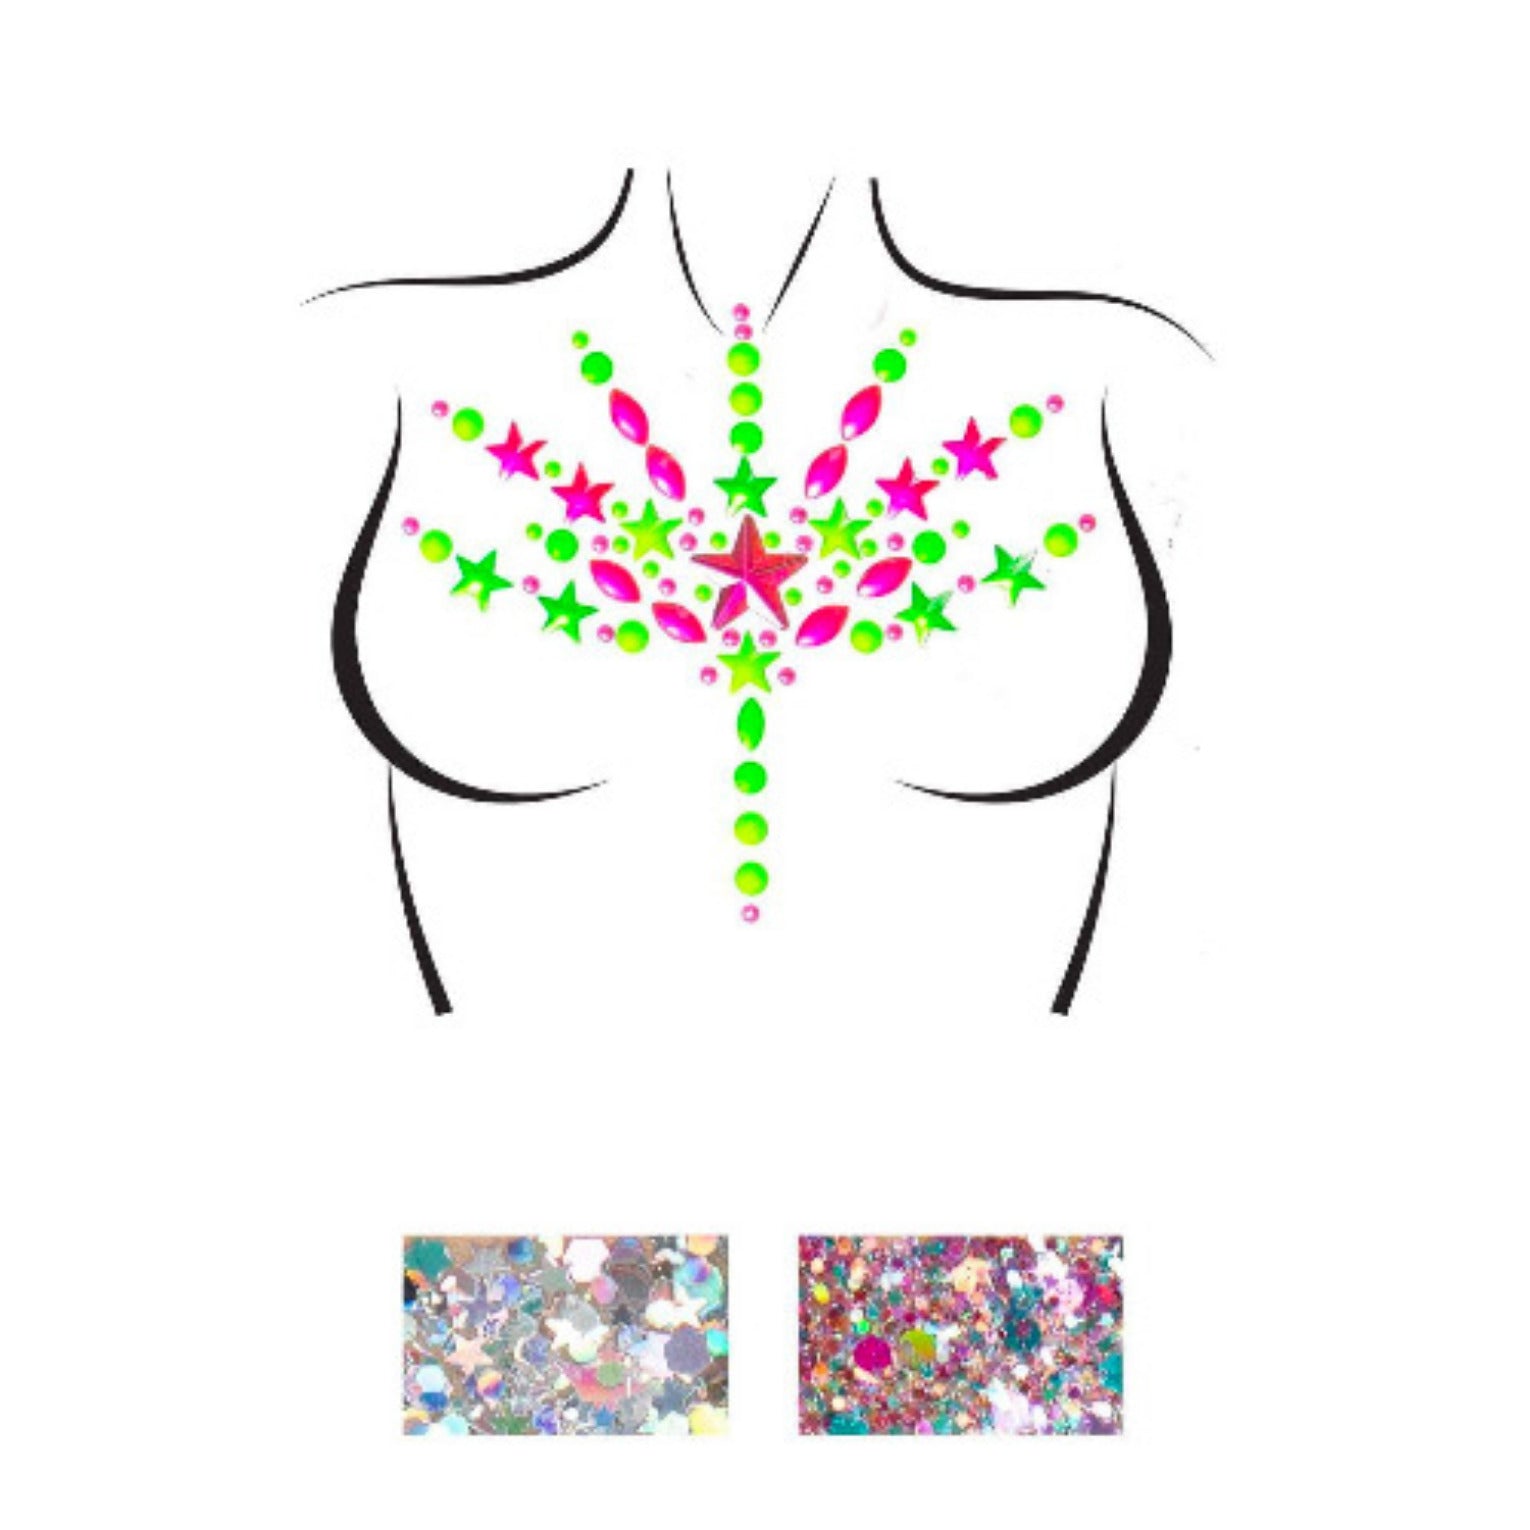 BLISS Neon Glow In The Dark Jewel Body Stickers W/ Body Glitter Packets